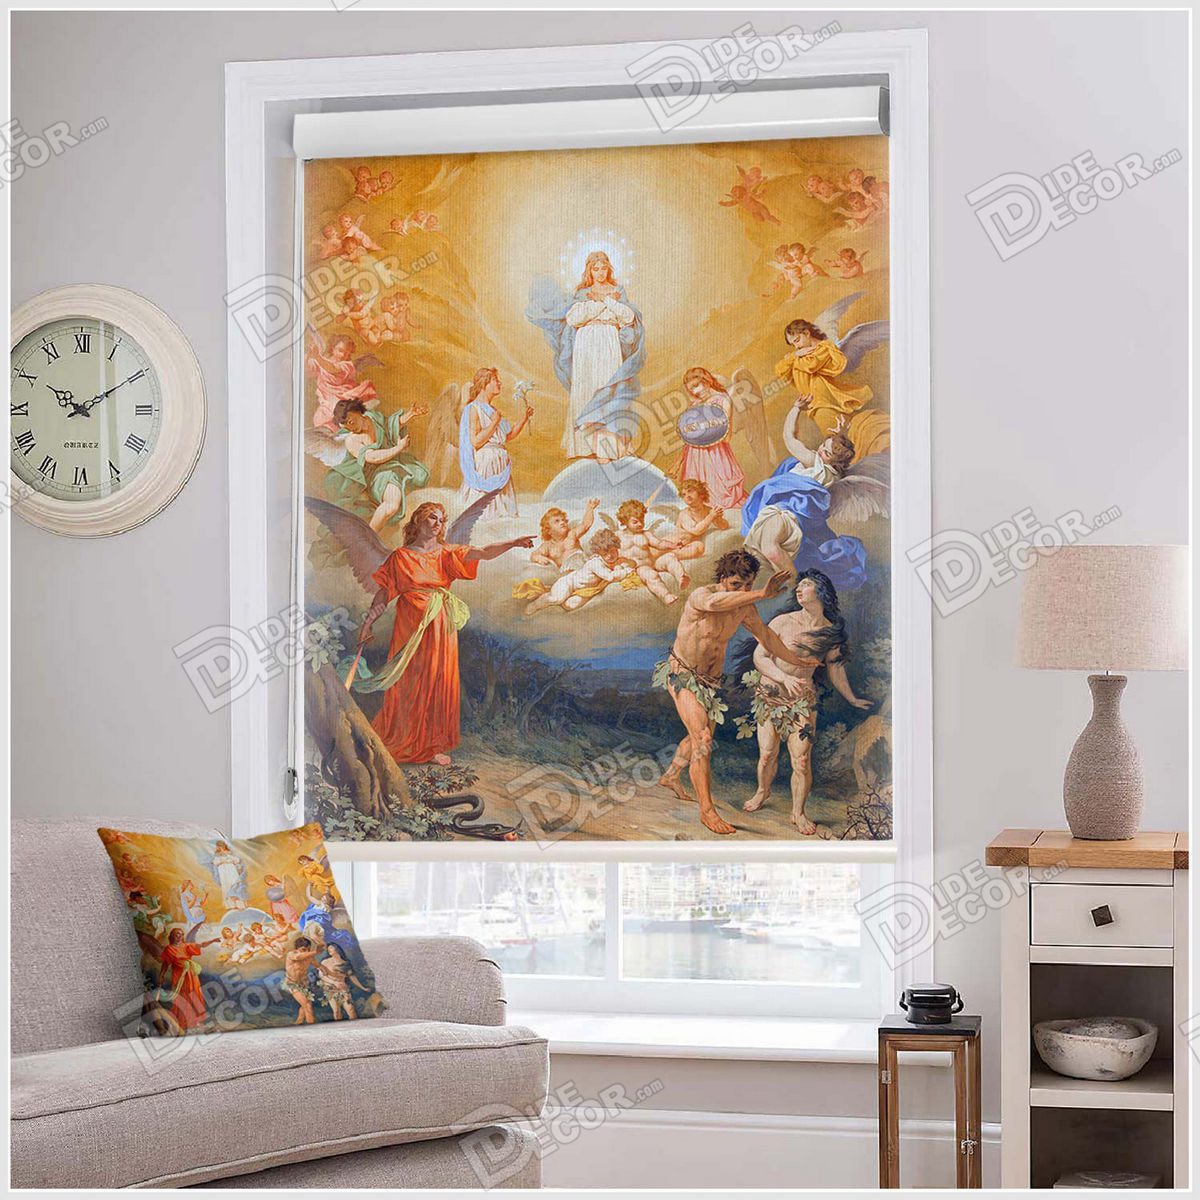 پرده شید نقاشی کد SCP-10 با تصویری از اثر هنری میکل آنژ بوده و شامل مریم مقدس و عیسی مسیح و آدم و هوا و فرشته هایی می باشد